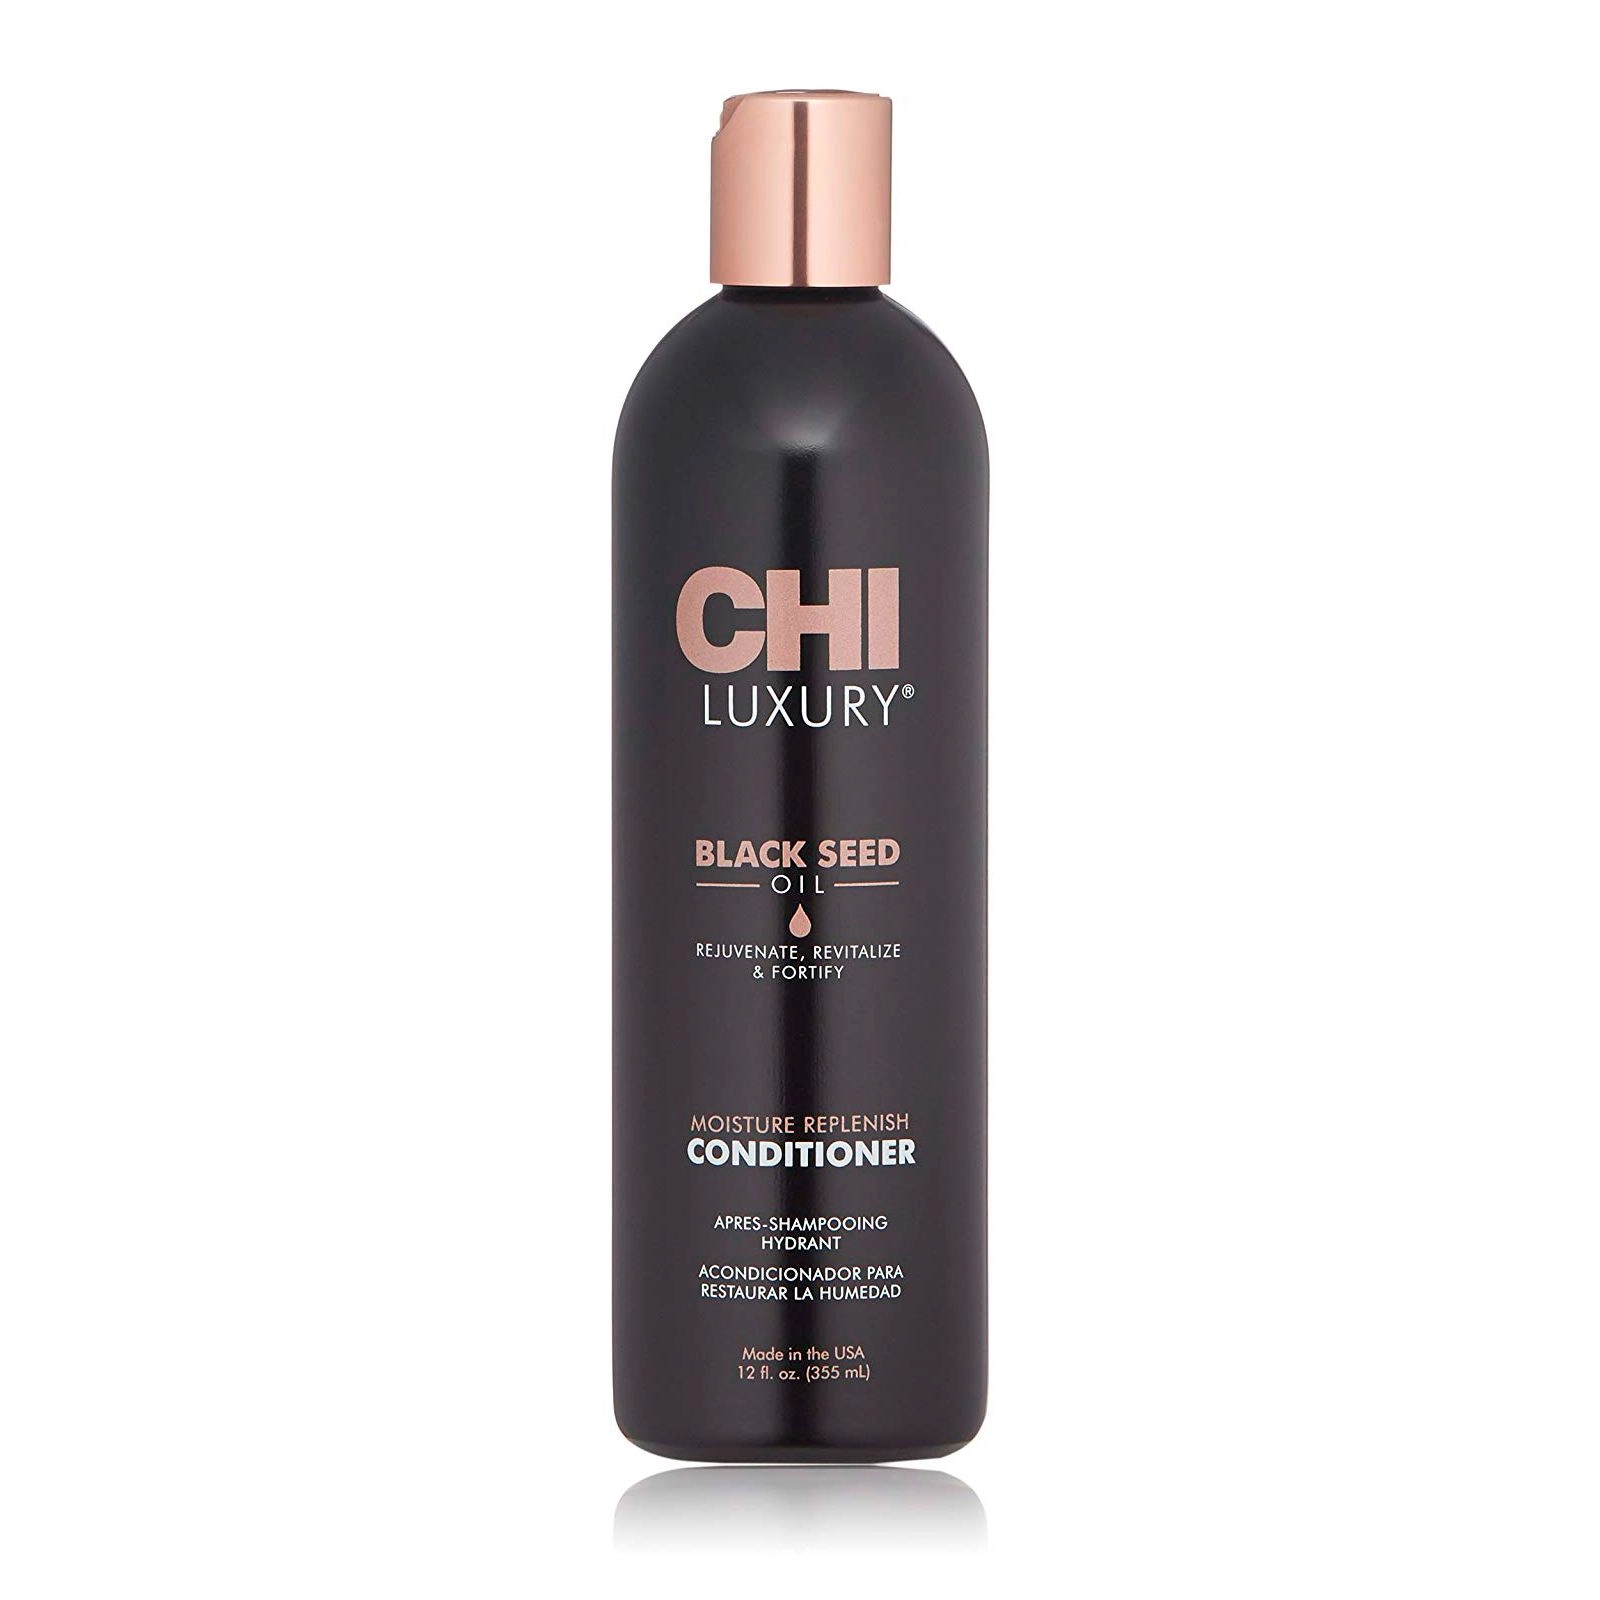 Зволожуючий кондиціонер для волосся з олією чорного кмину - CHI Luxury Black Seed Oil Moisture Replenish Conditioner, 355 мл - фото N1